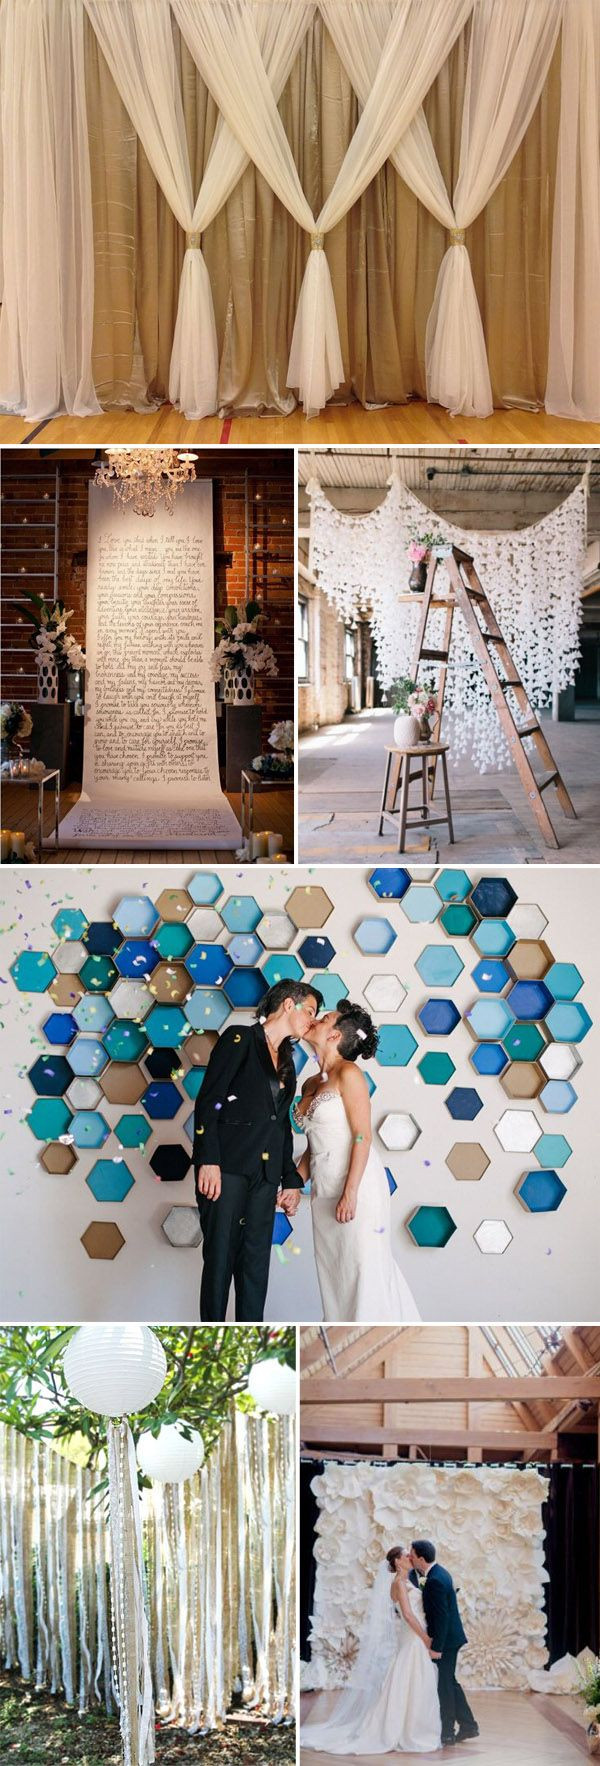 Wedding Backdrop DIY
 Best 25 Diy wedding backdrop ideas on Pinterest